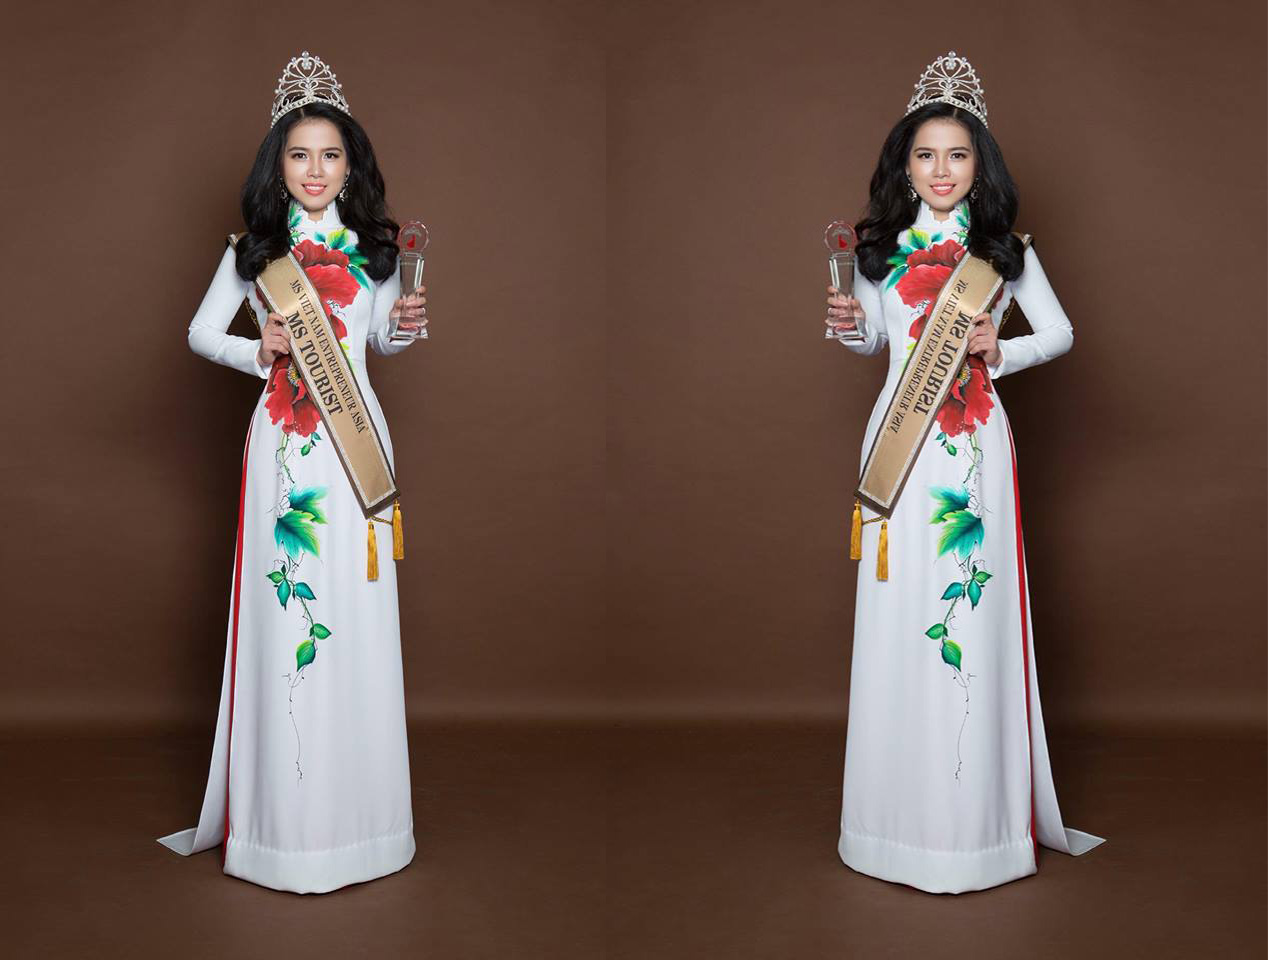 Ngọc Hằng đăng quang Hoa hậu du lịch Châu Á năm 2018 tại Đài Loan